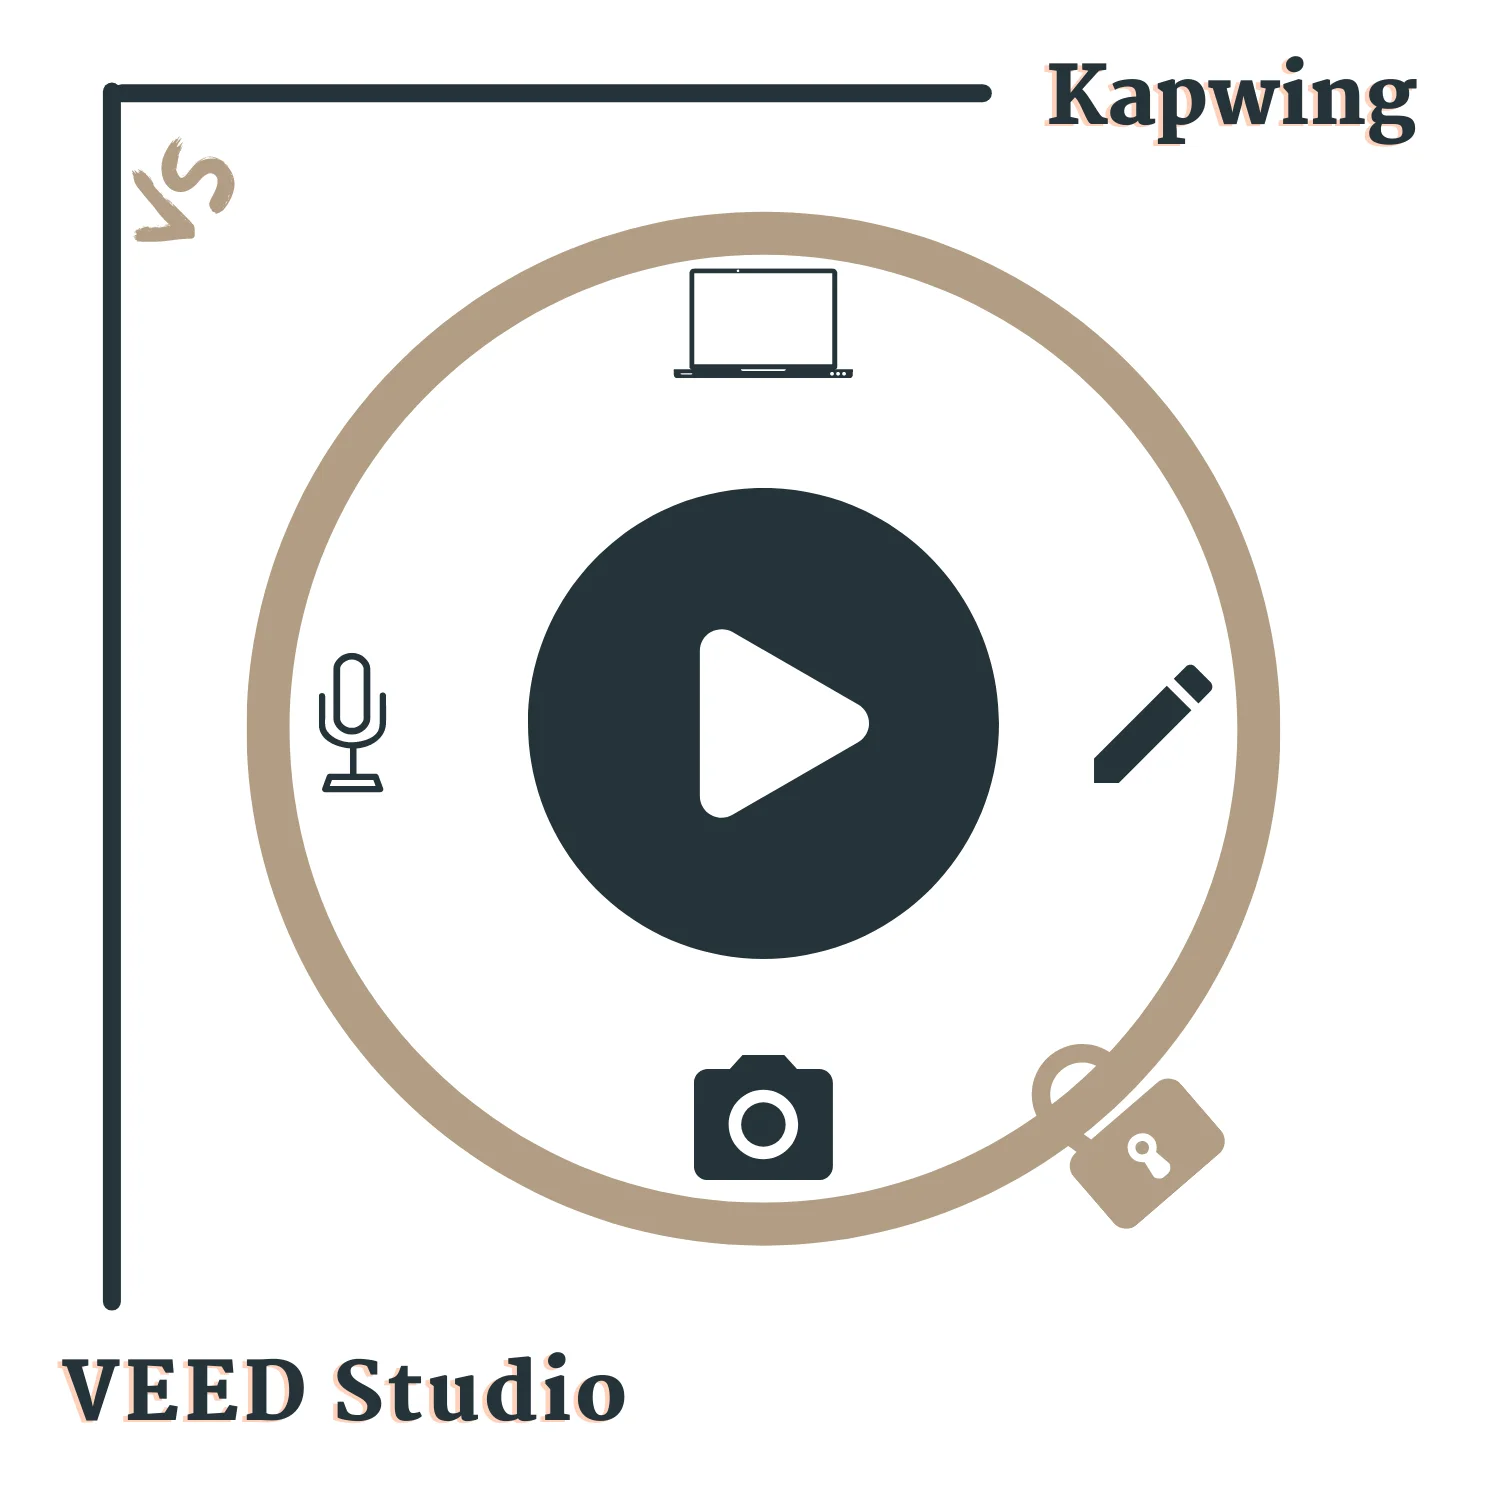 So sánh Kapwing và VEED Studio: Bạn đang tìm kiếm một trình chỉnh sửa video trực tuyến tốt nhất? Hãy cùng so sánh Kapwing và VEED Studio để tìm ra lựa chọn tốt nhất cho nhu cầu của bạn! Xem ảnh liên quan để có cái nhìn tổng quan về những tính năng đáng chú ý nhất của hai trang web.